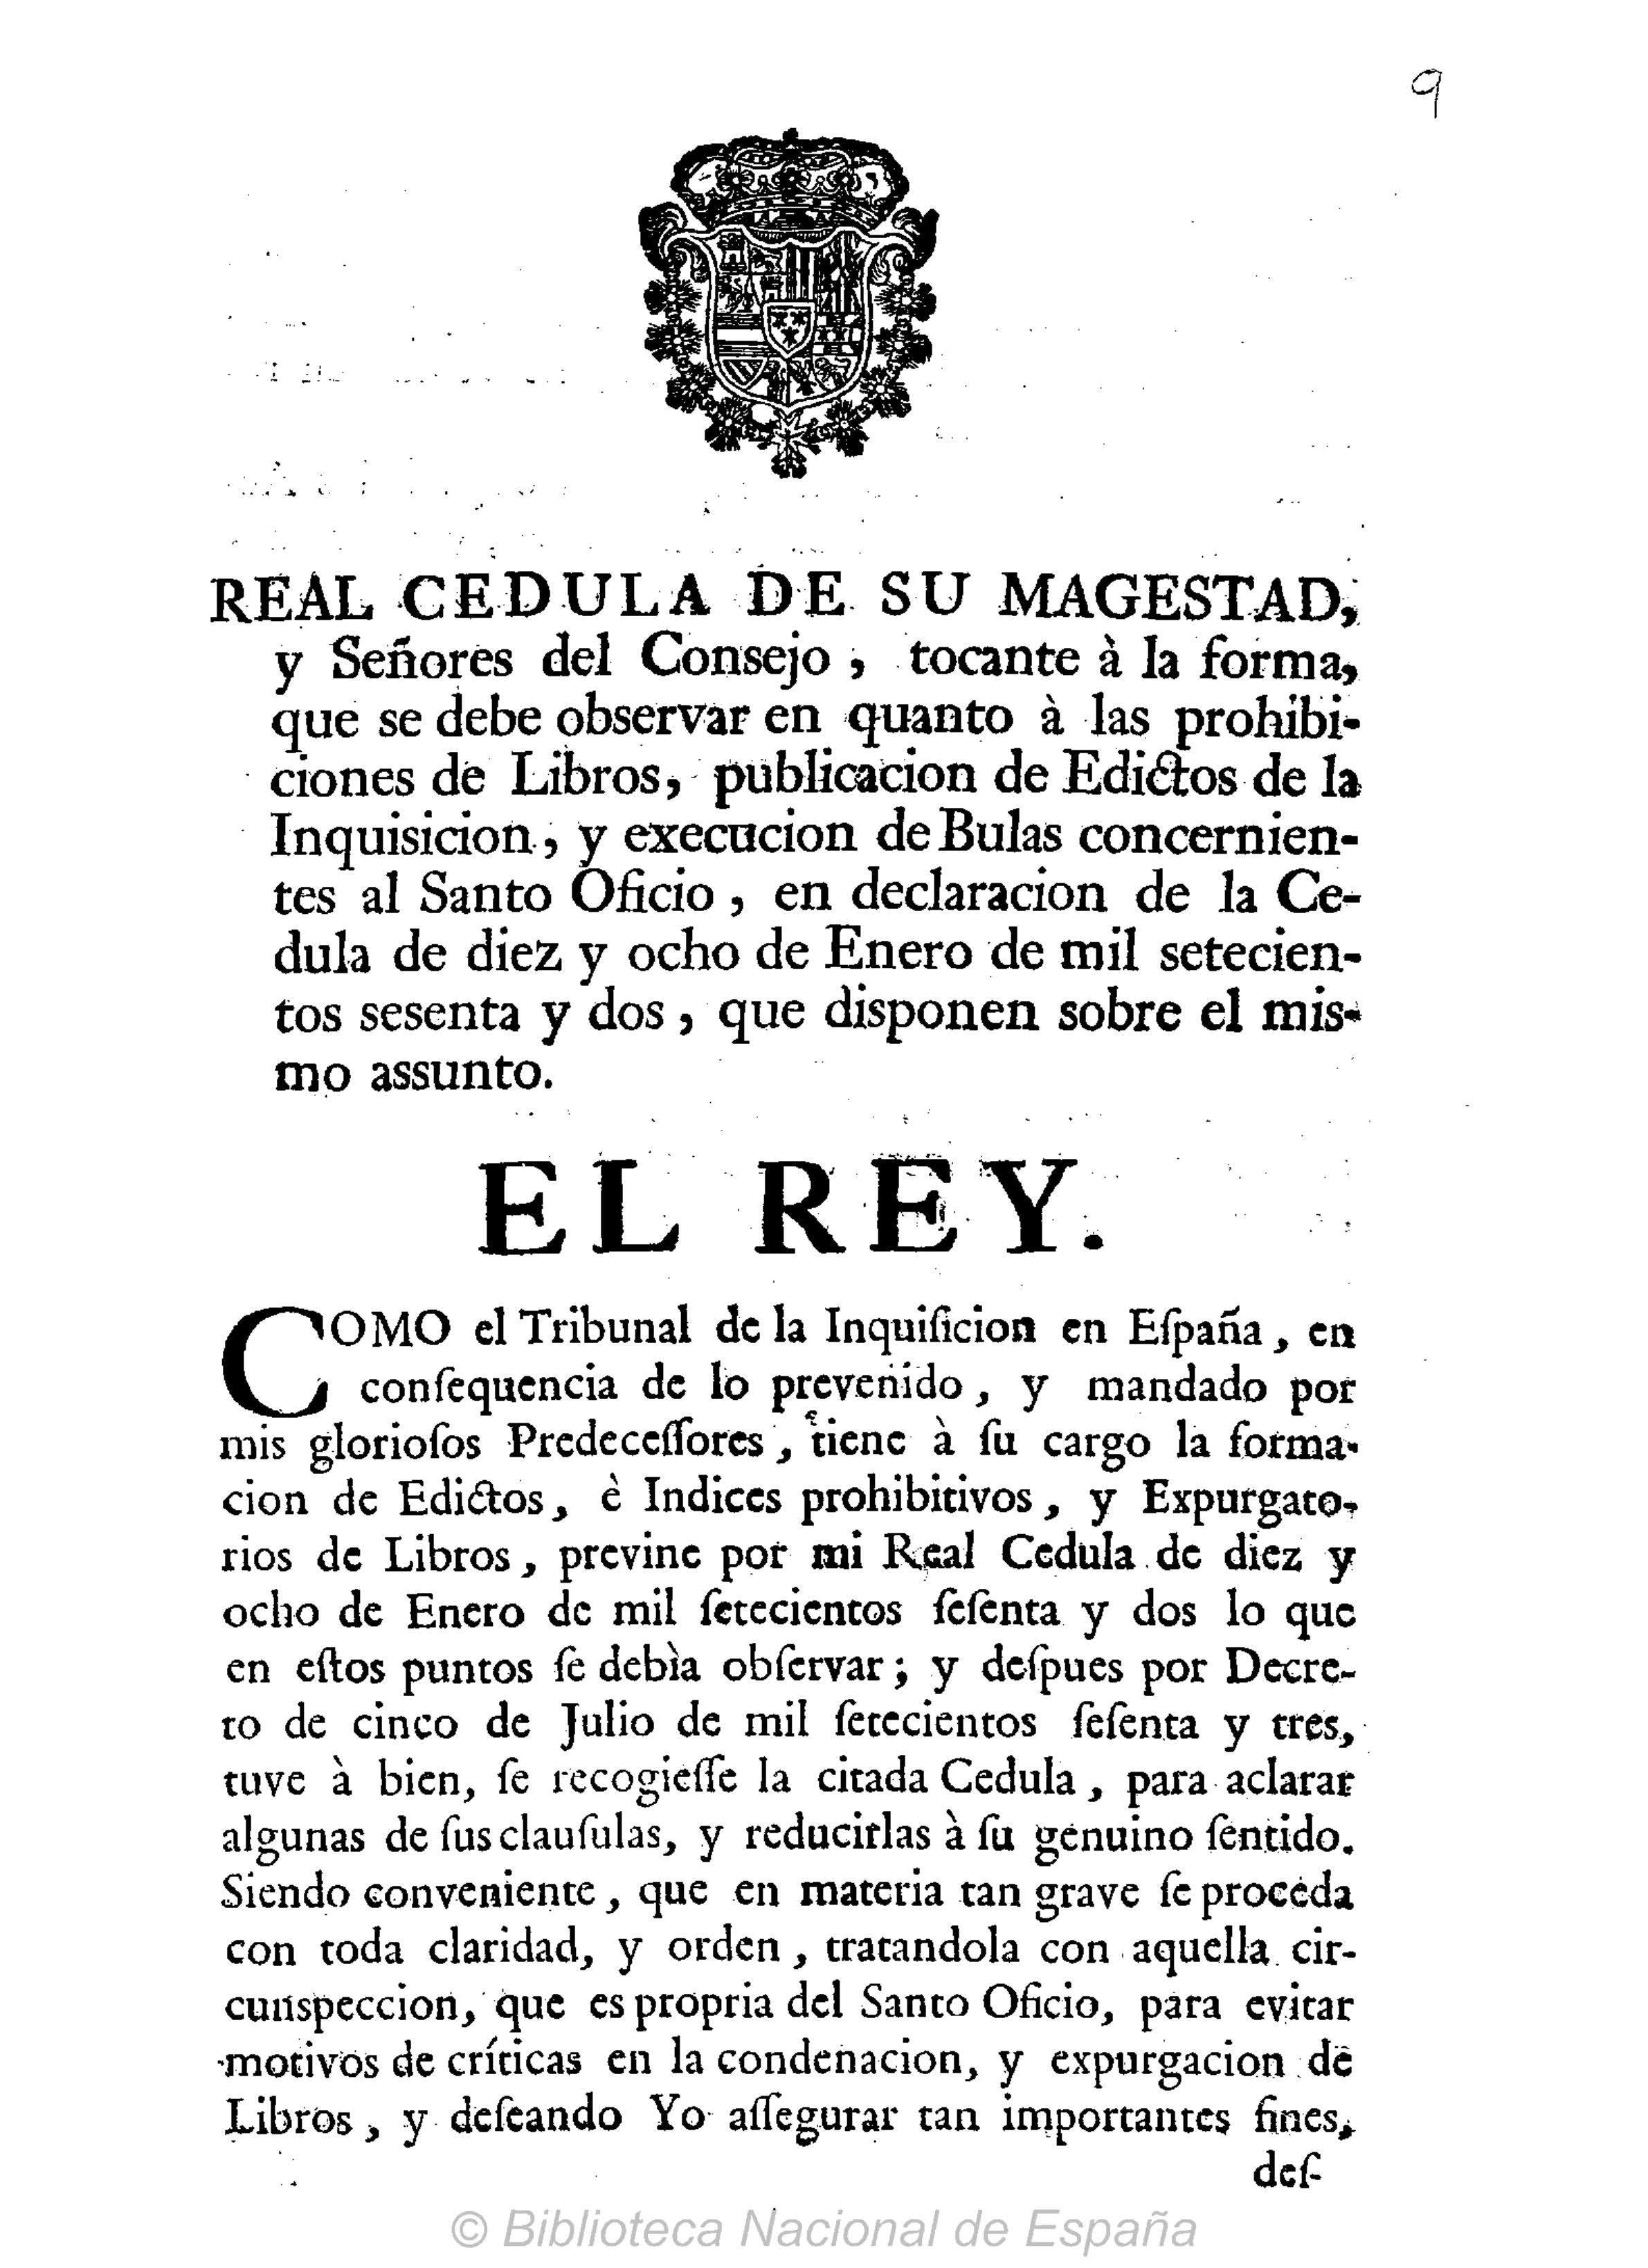 Real Cédula de su Magestad y Señores del Consejo tocante a las prohibiciones de libros y Auto en la Ciudad de Sevilla